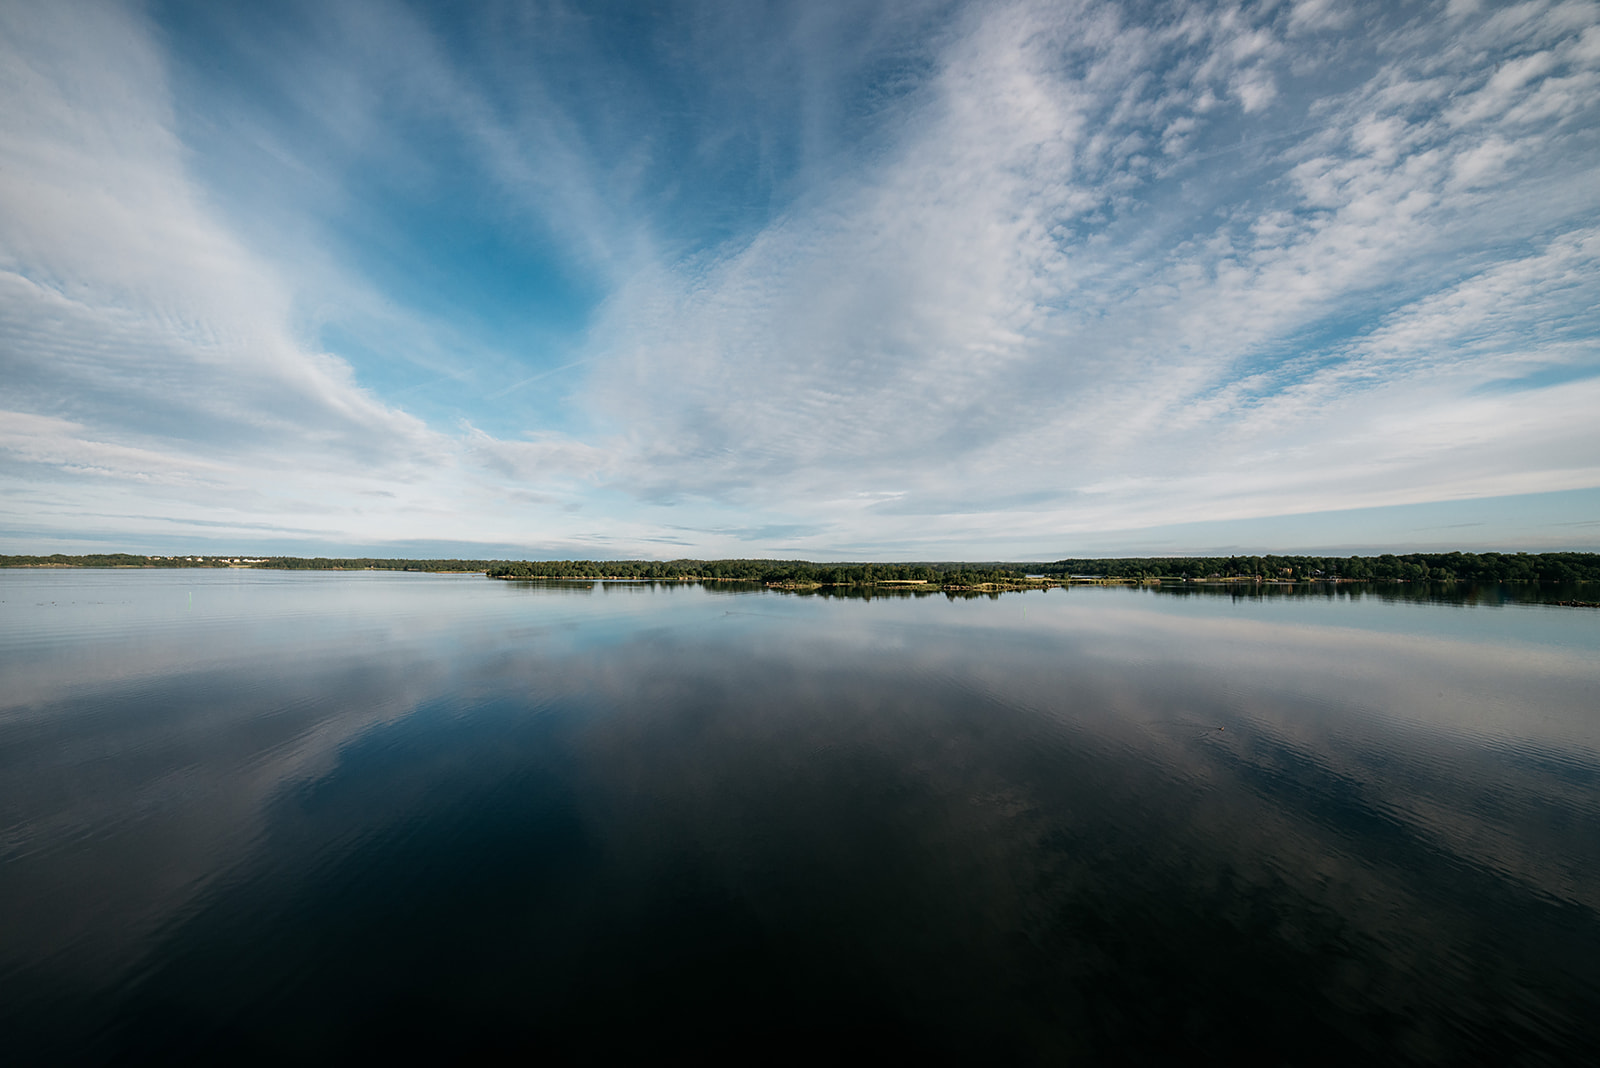 mirroring water around a small archipelago in Sweden